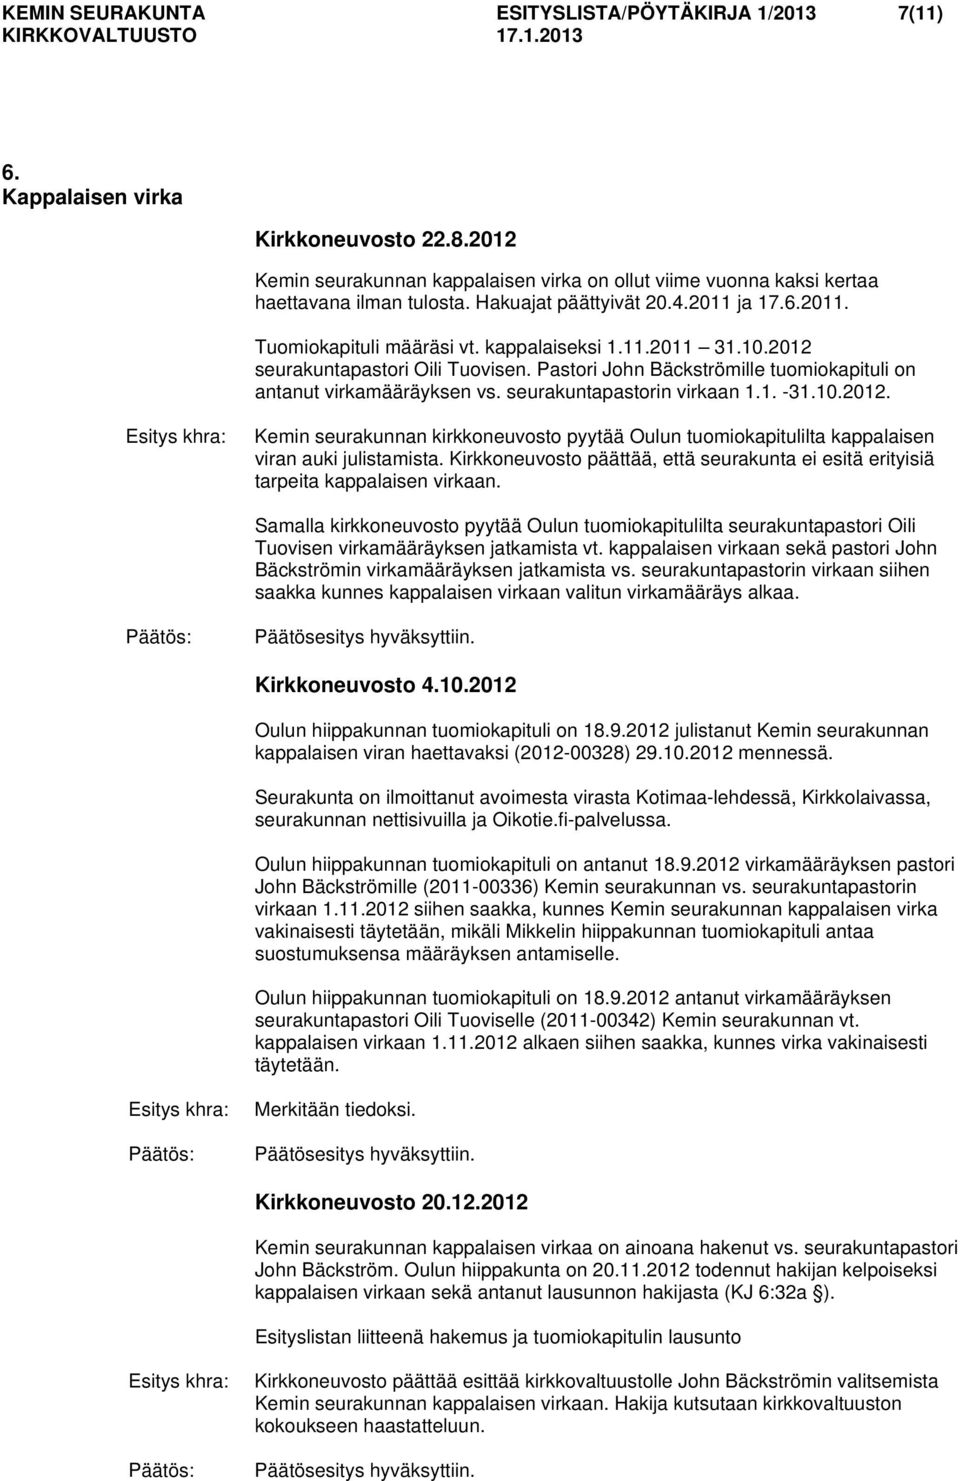 Pastori John Bäckströmille tuomiokapituli on antanut virkamääräyksen vs. seurakuntapastorin virkaan 1.1. -31.10.2012.